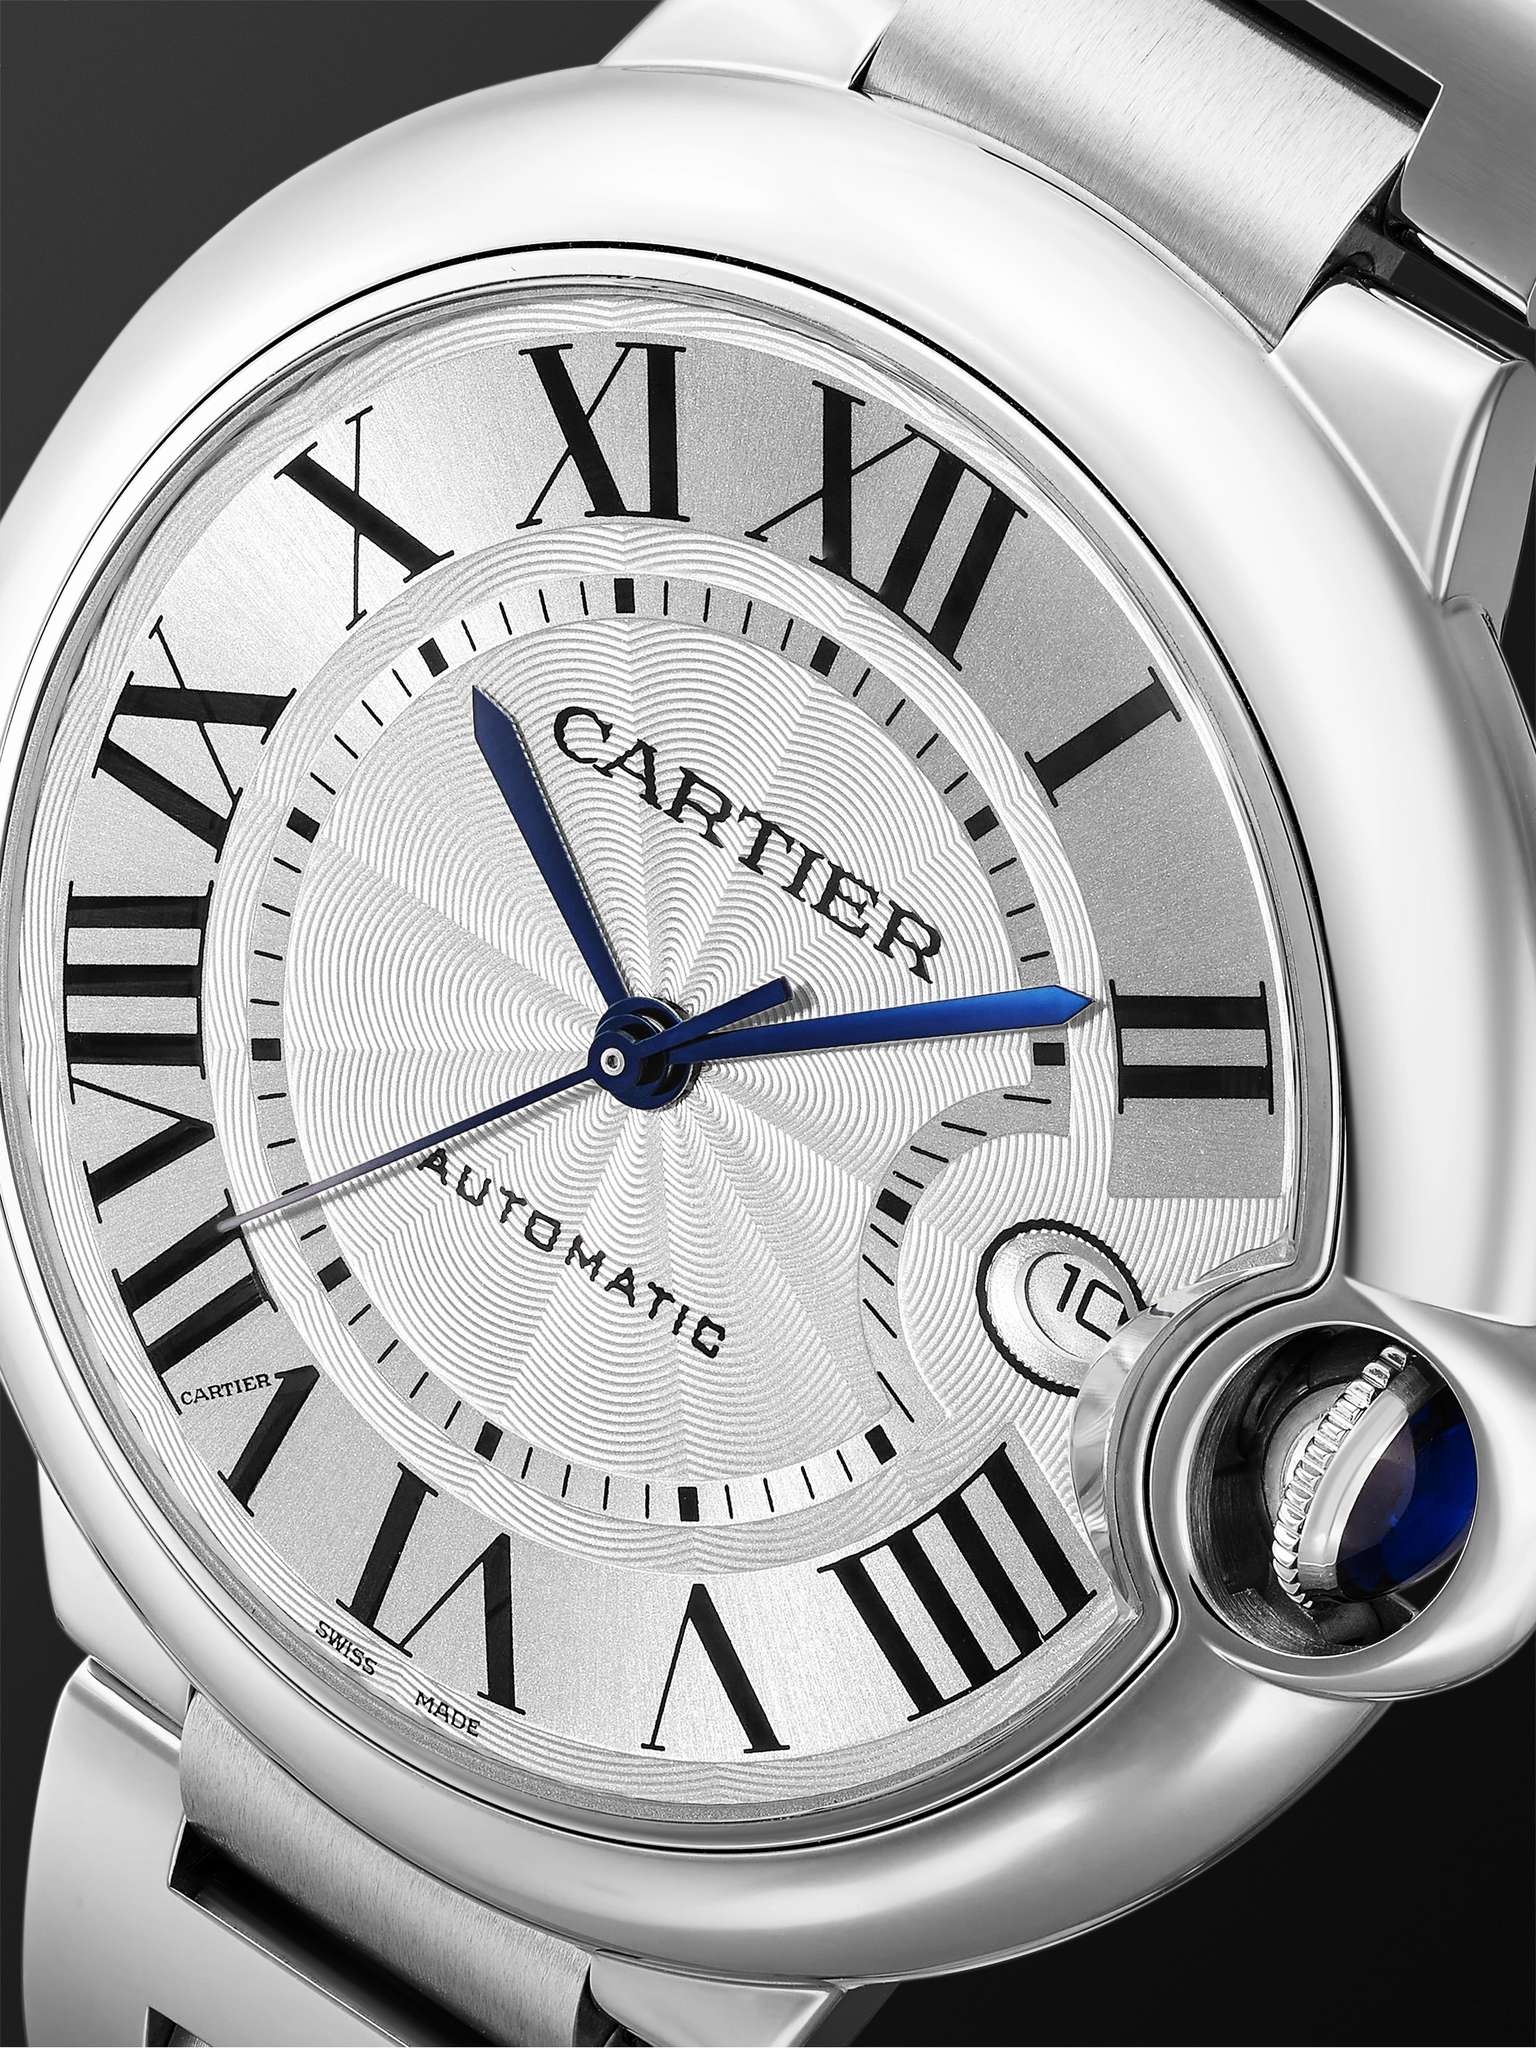 Ballon Bleu de Cartier Automatic 40mm Stainless Steel Watch, Ref. No. WSBB0040 - 5